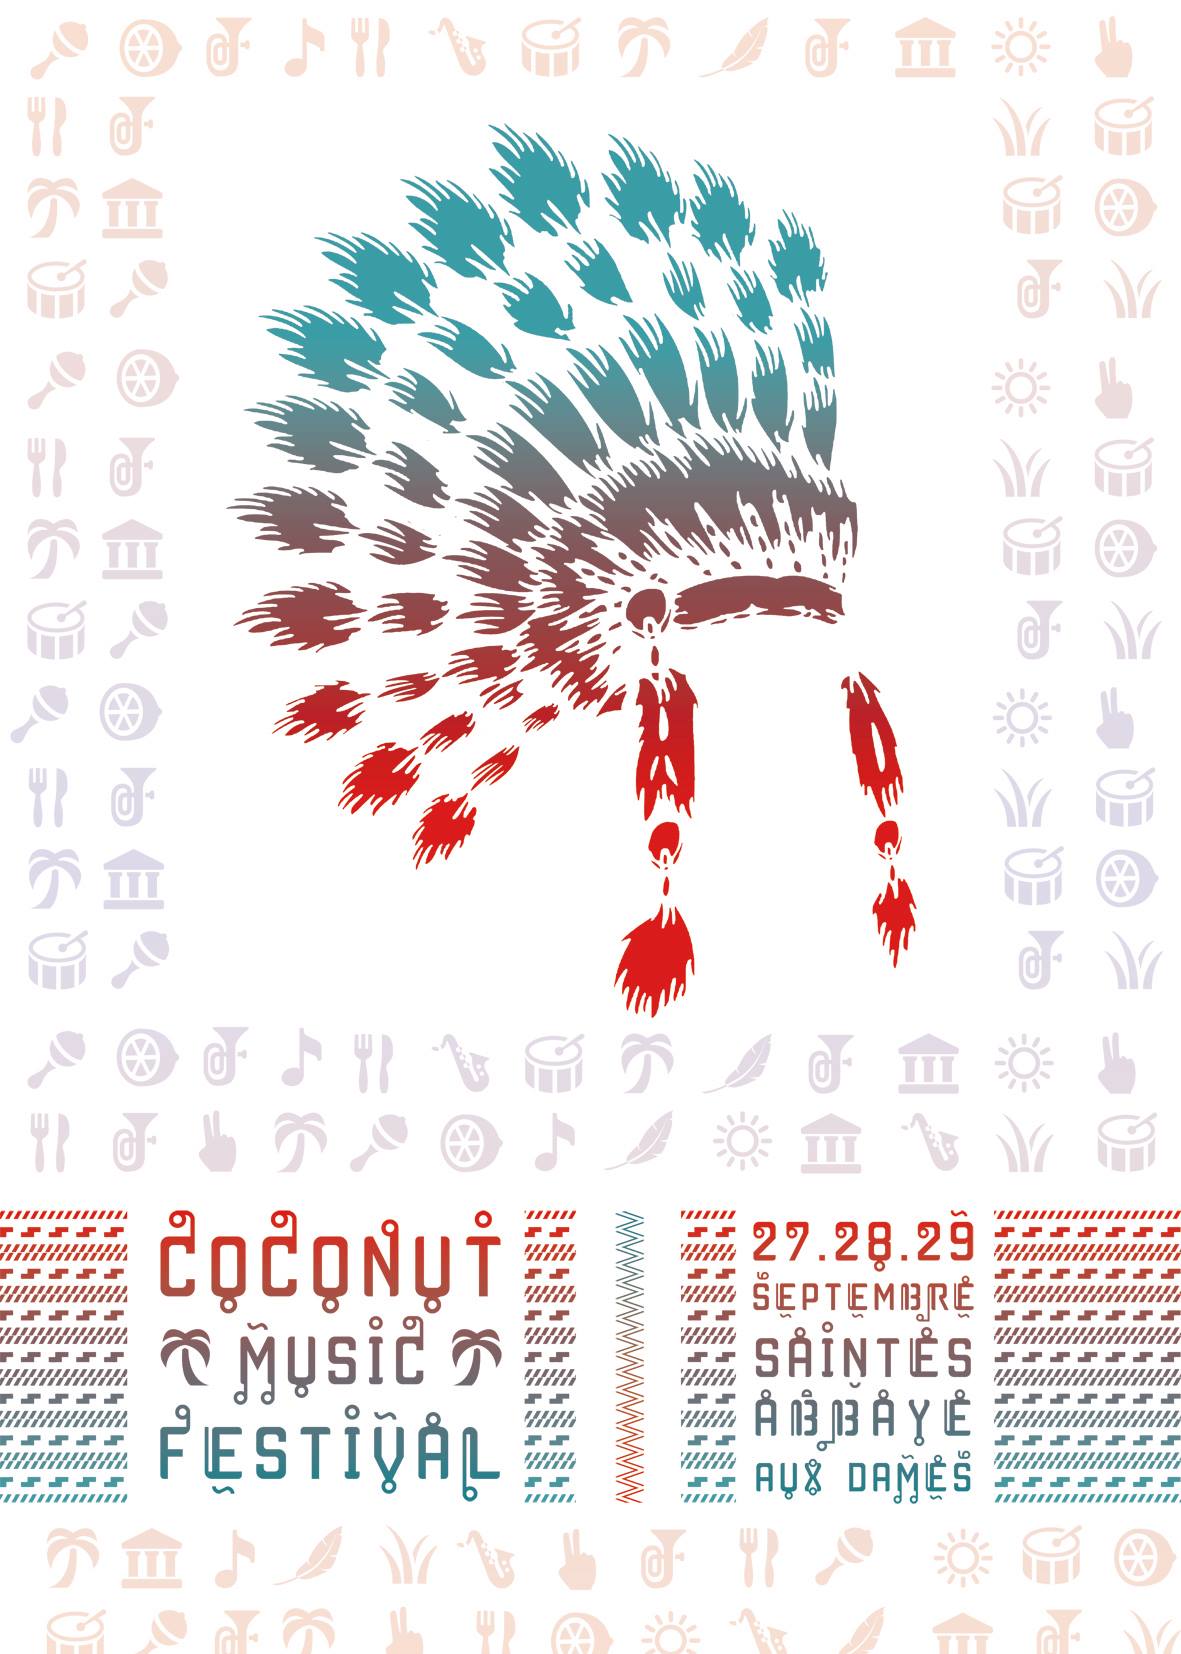 Le Coconut Music Festival aura lieu du 27 au 29 Septembre à Saintes